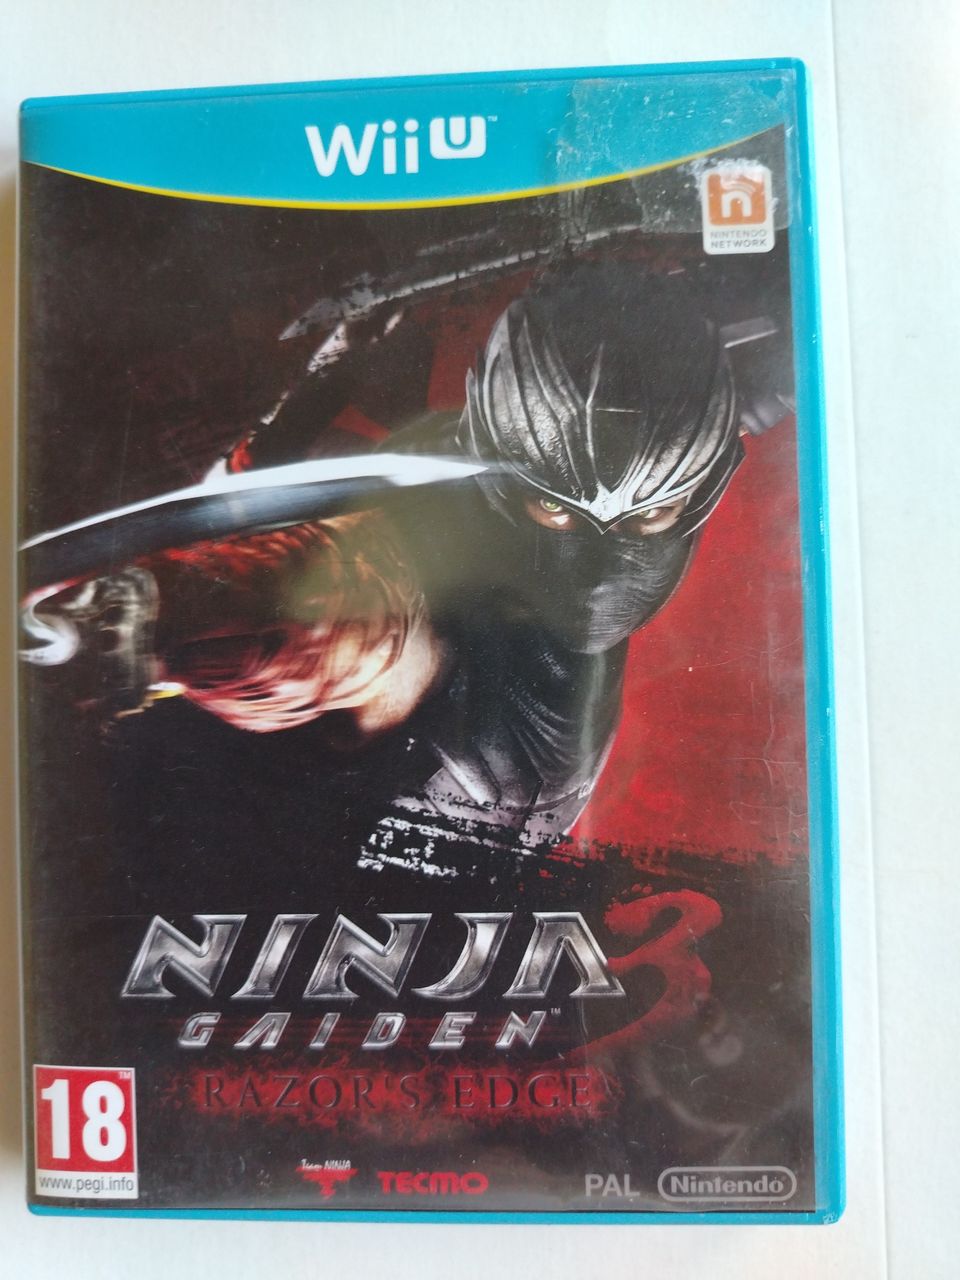 WiiU Ninja Gaiden 3